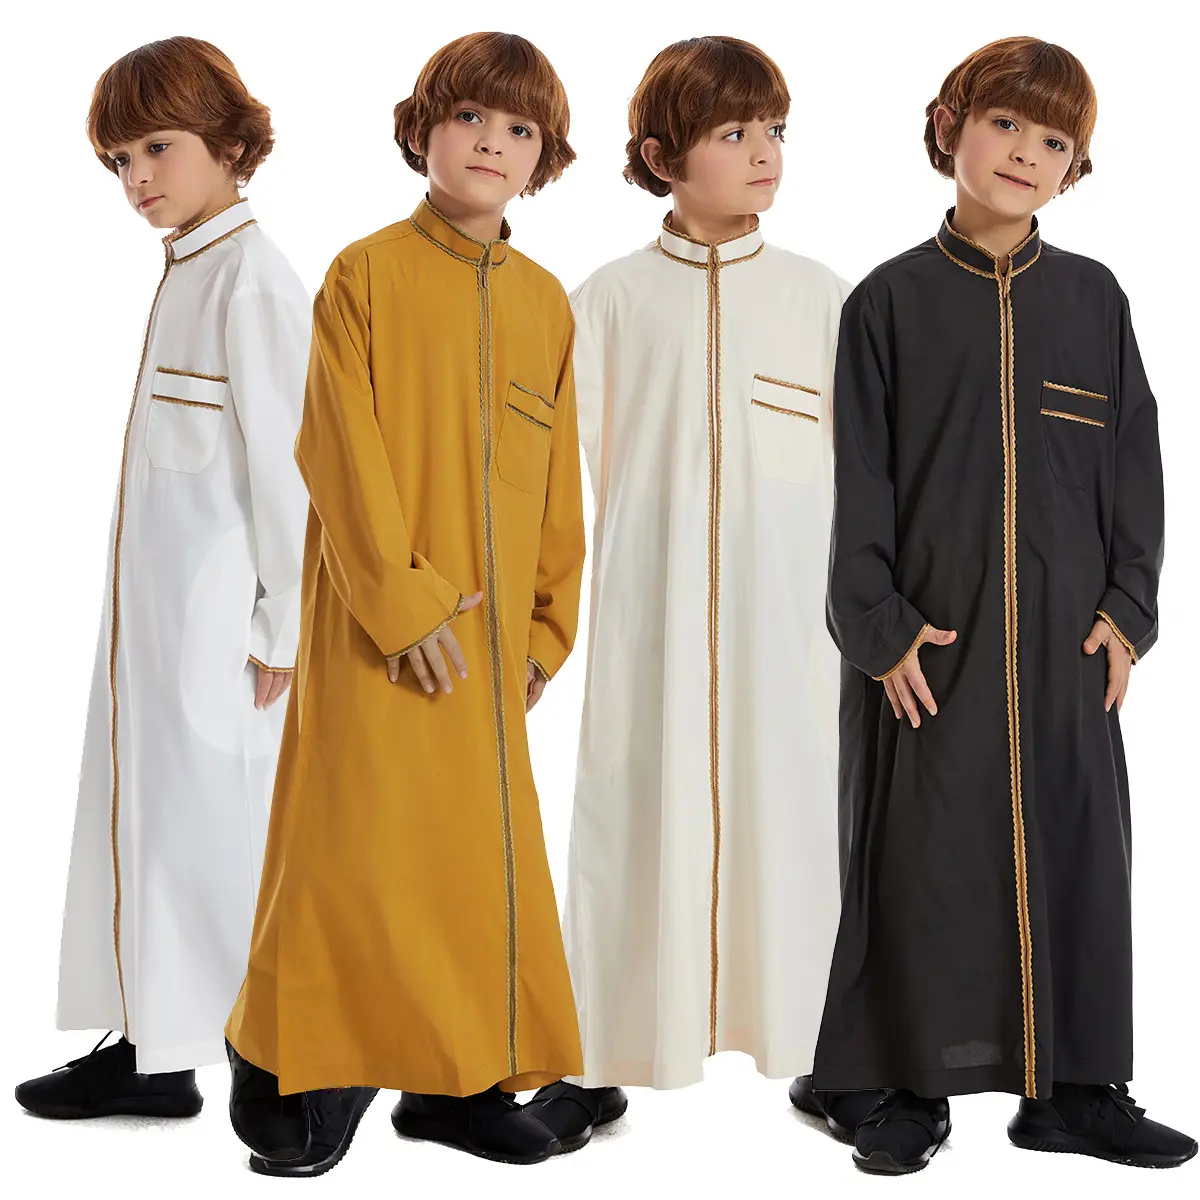 عباءة أطفال 1064 أولاد مسلمون روب صلاة أطفال دبي ملابس عصرية ملابس إسلامية فساتين طويلة للأولاد